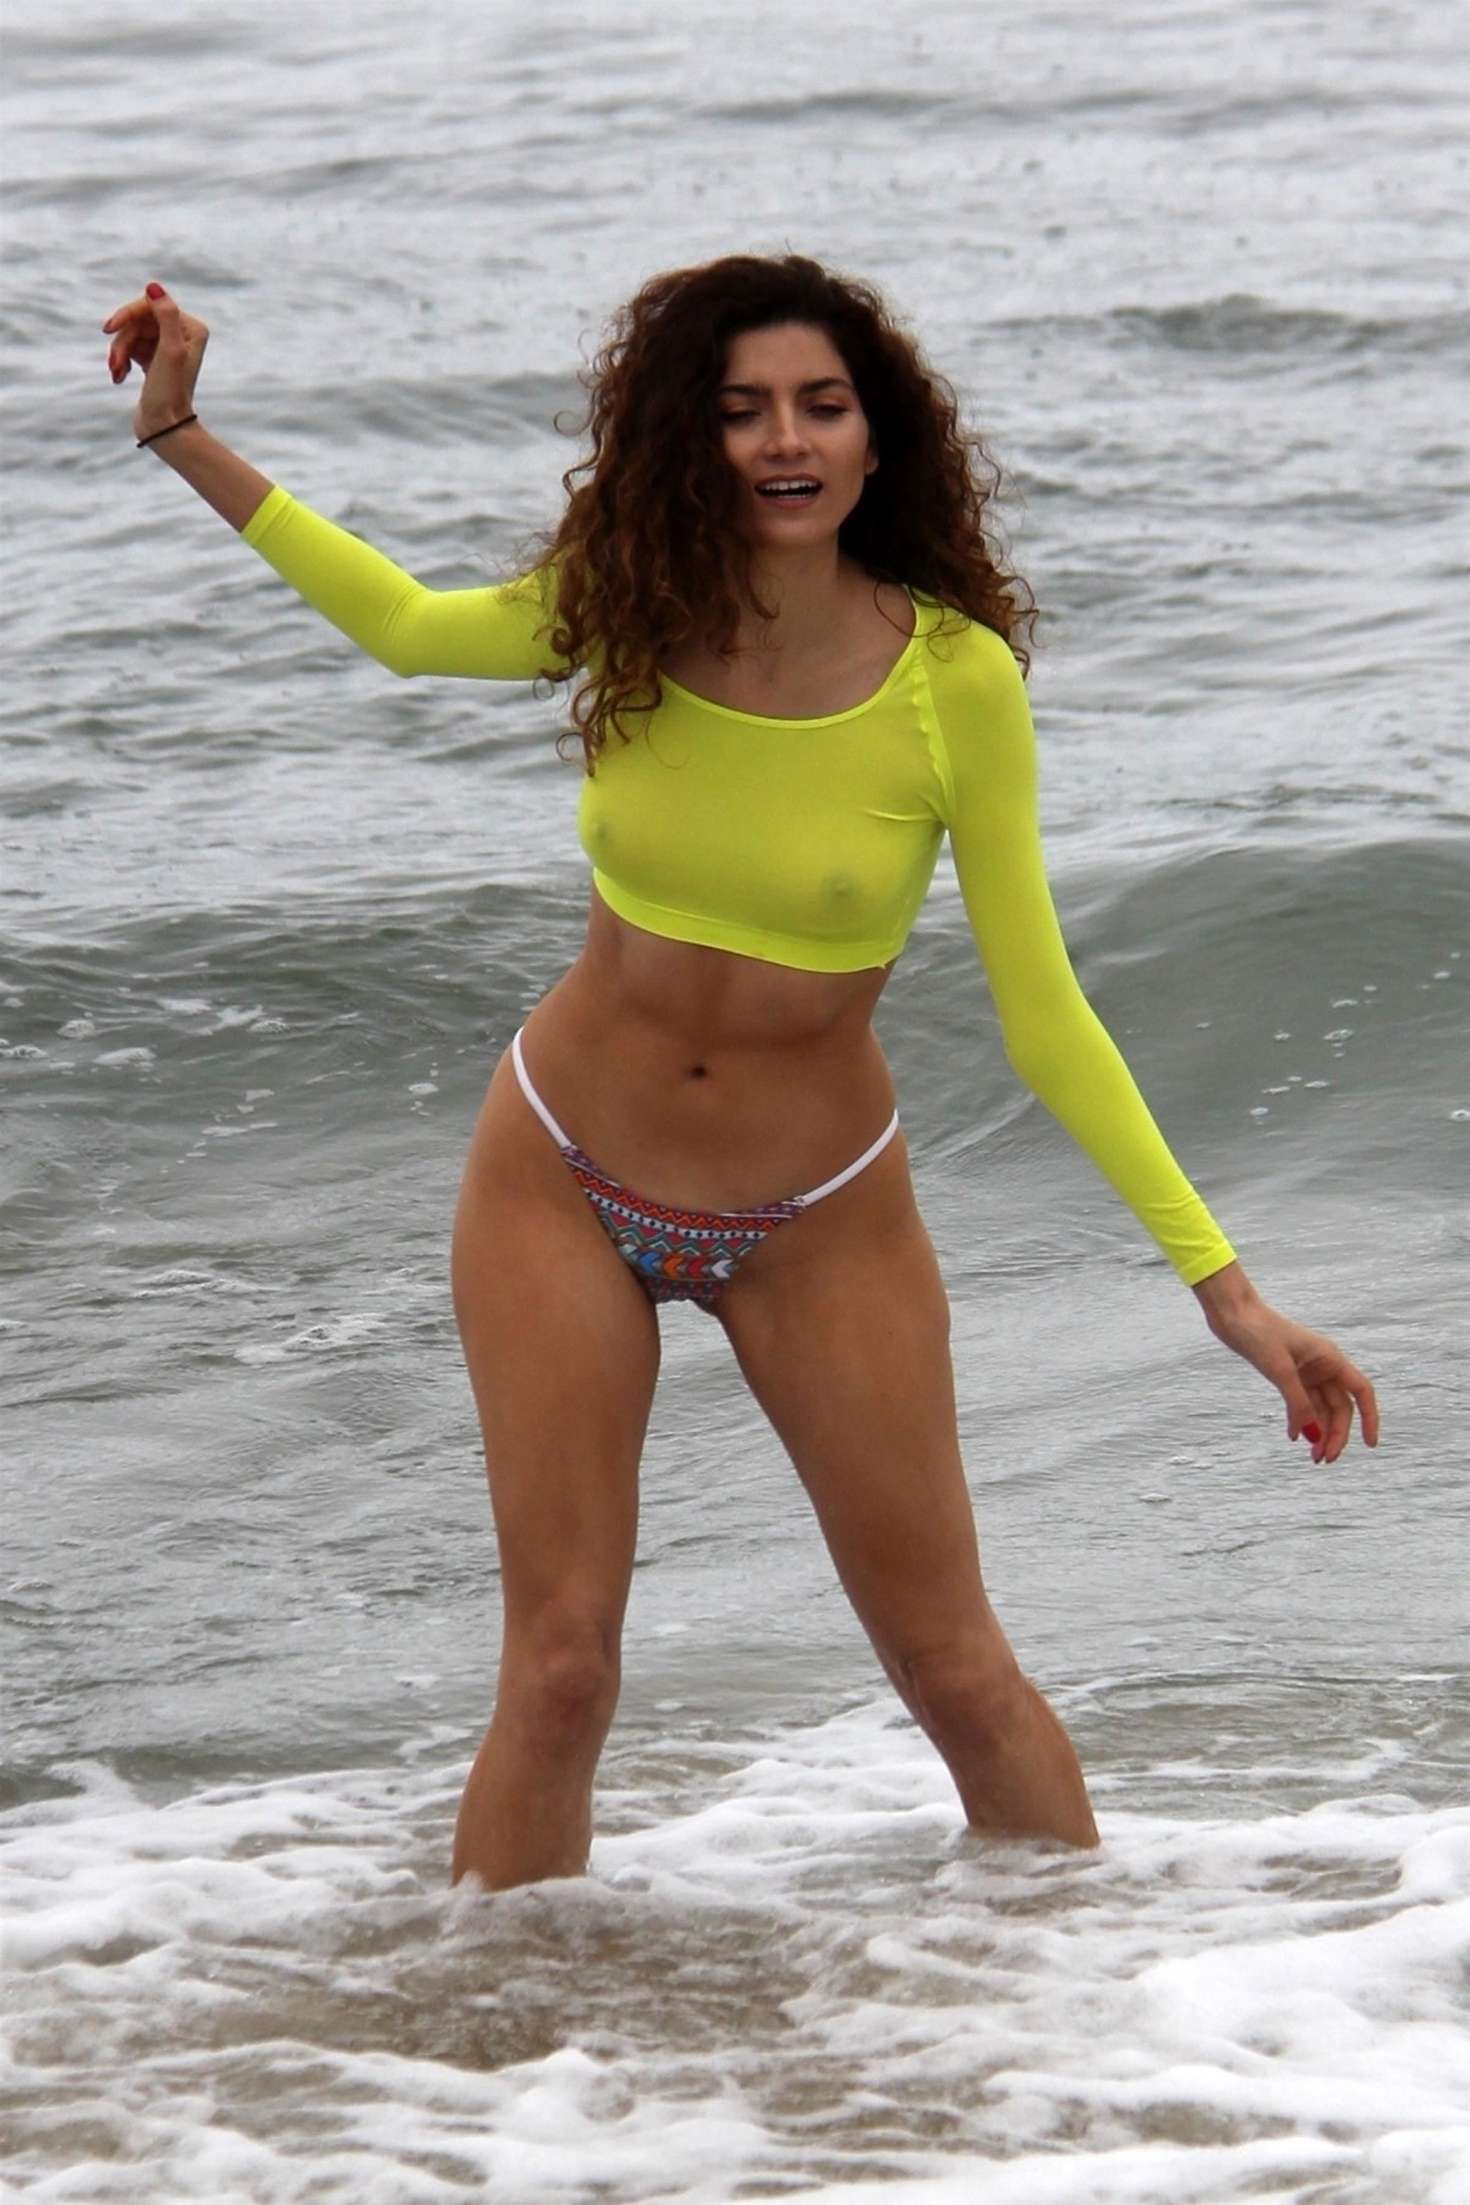 Blanca Blanco â€“ Bikini candids at the beach in Malibu